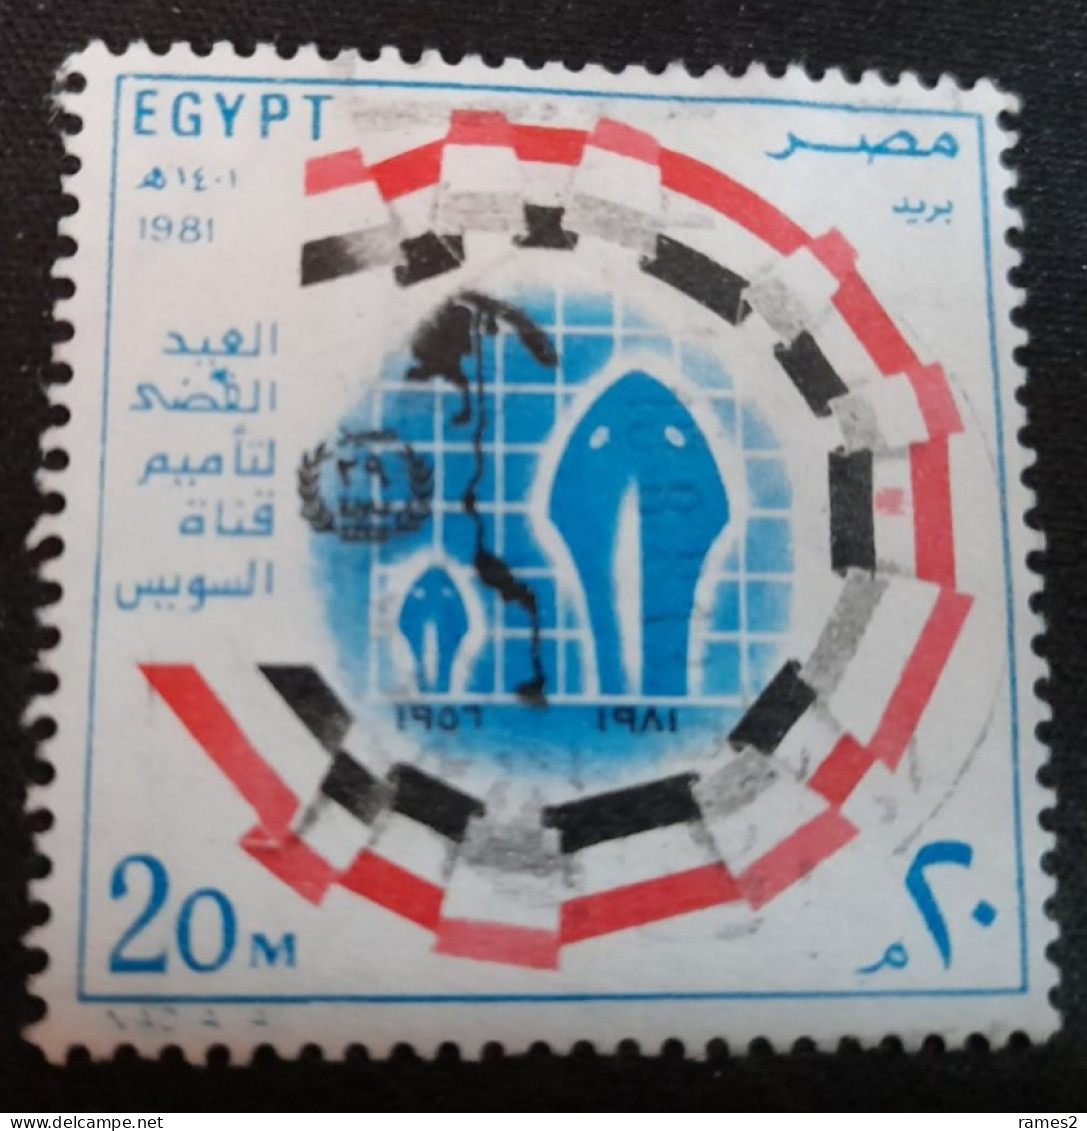 Egypte > 1953-.... République > 1980-89 > Oblitérés N° 1147 - Used Stamps